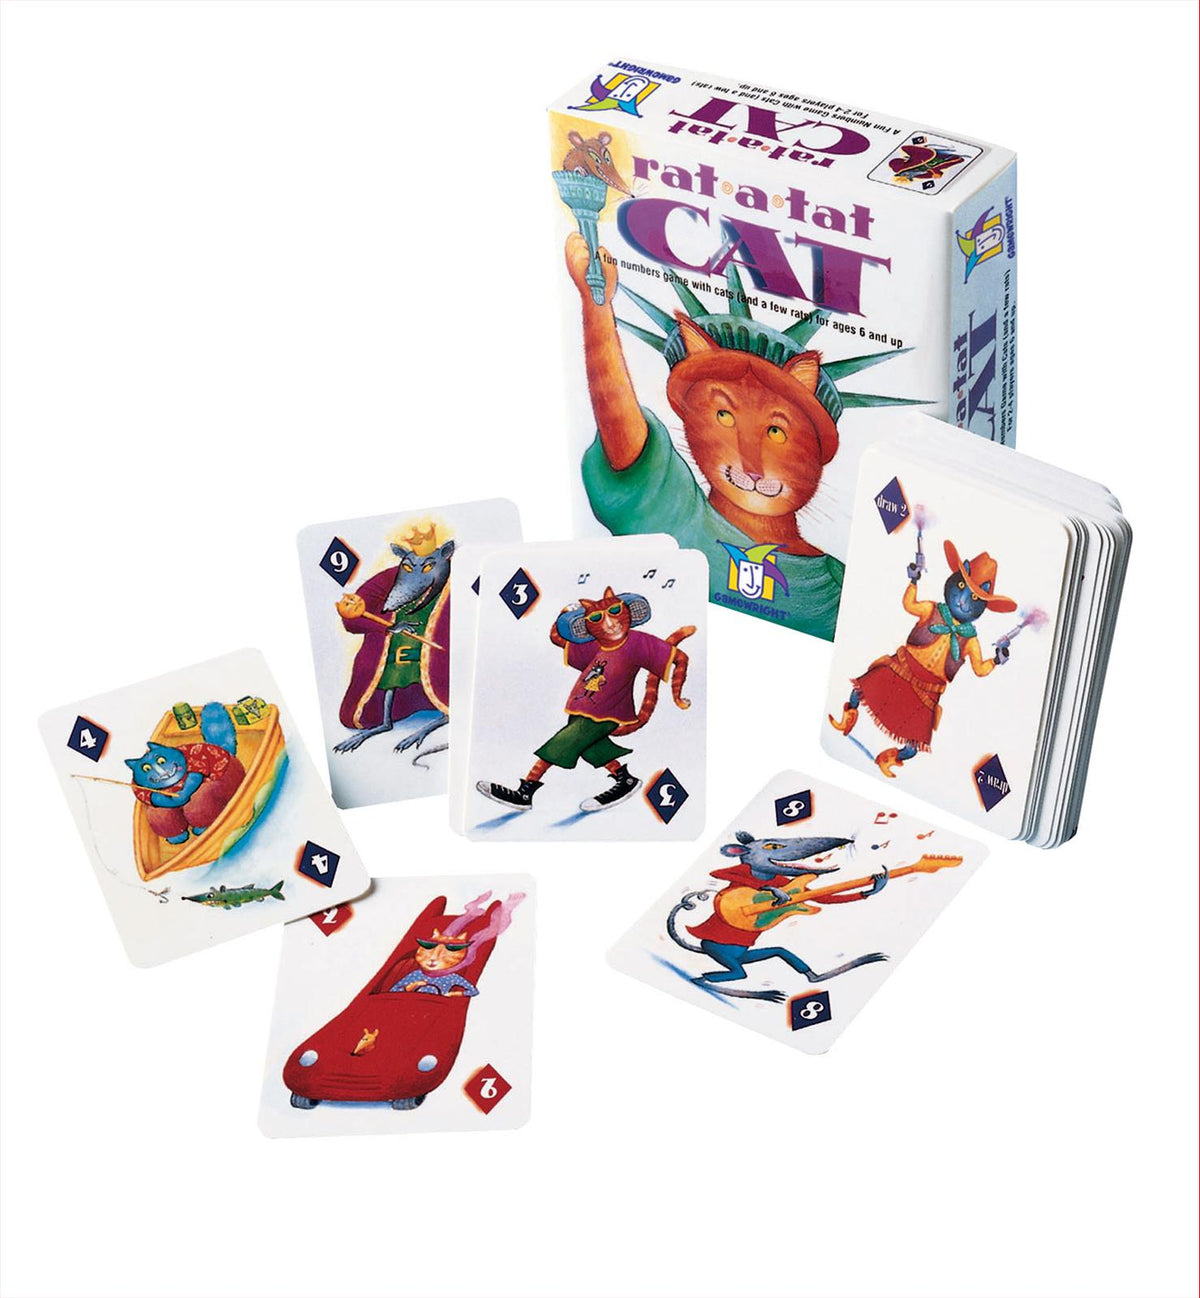 Rat -A- Tat Cat Card Game - Good Games